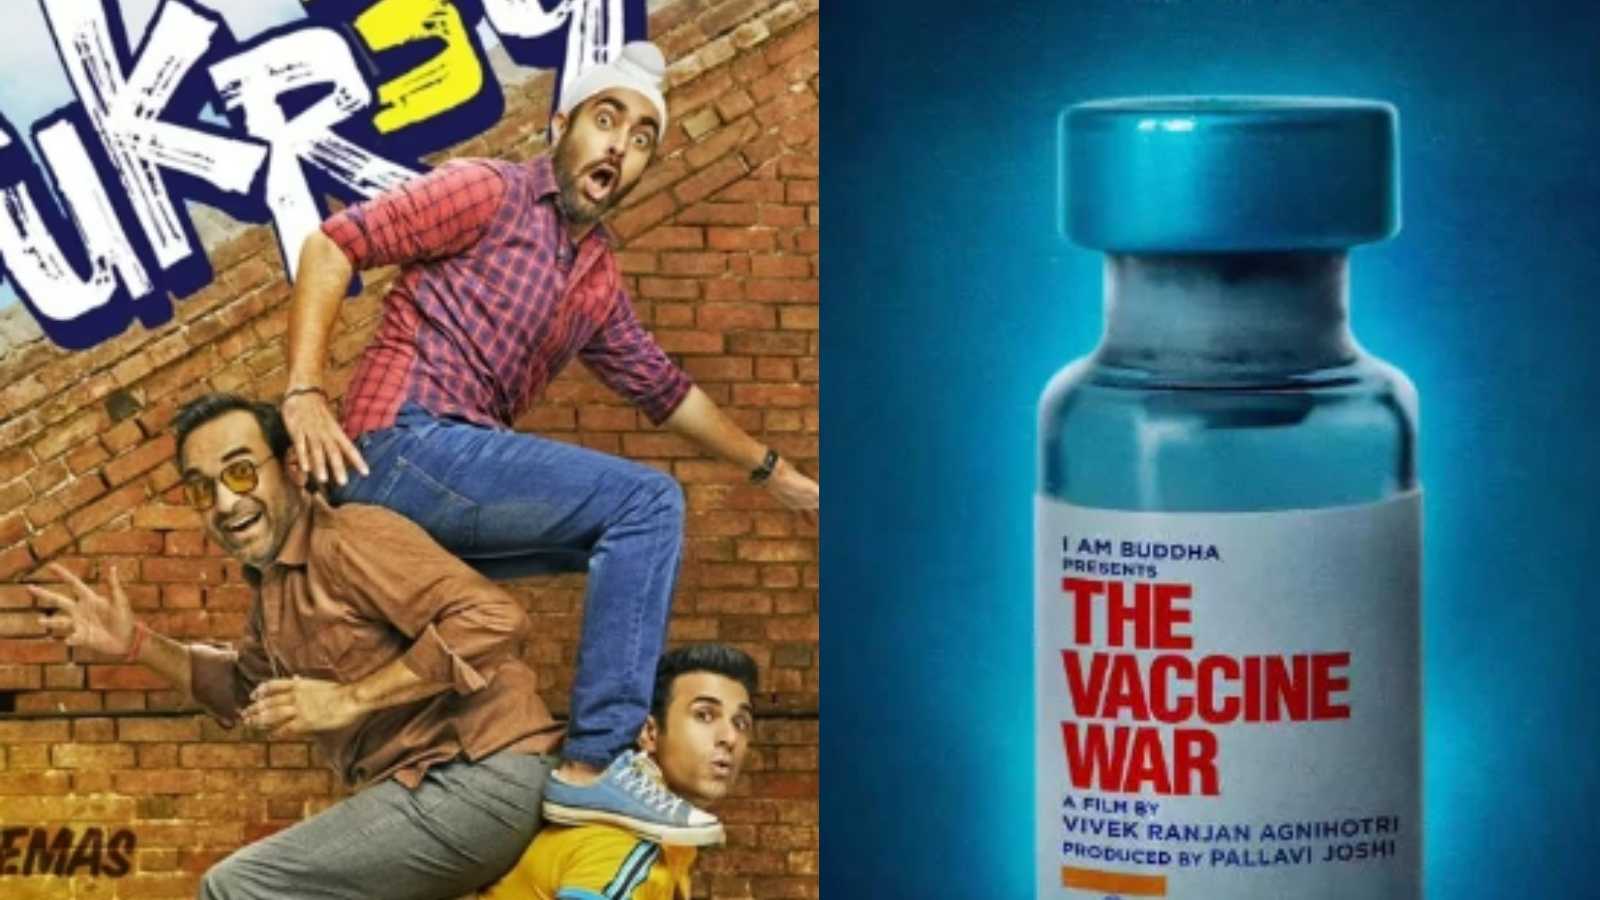 Fukrey 3 vs The Vaccine War box office